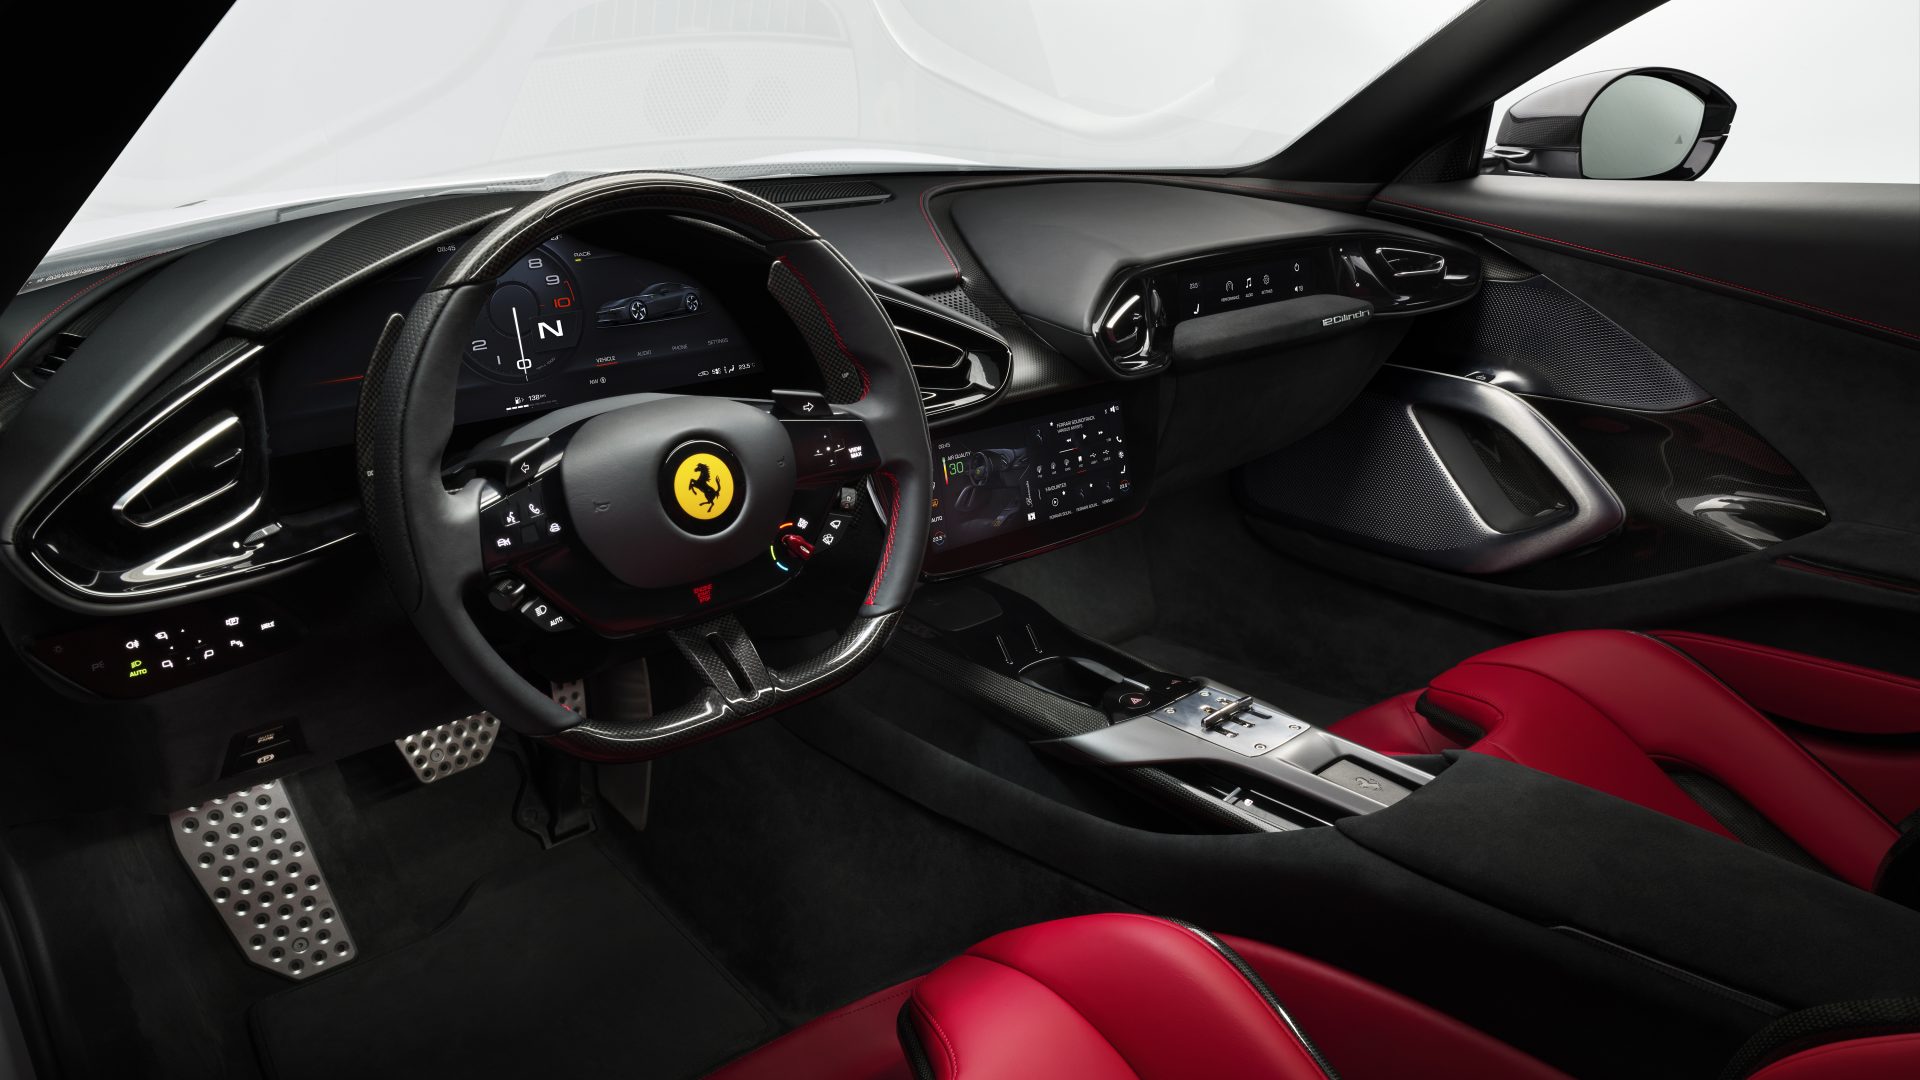 New Ferrari V12 ext 09 white media c732d287 117a 4290 a39e 29e7ad9704cf Ferrari 12Cilindri : Μια σύγχρονη Daytona